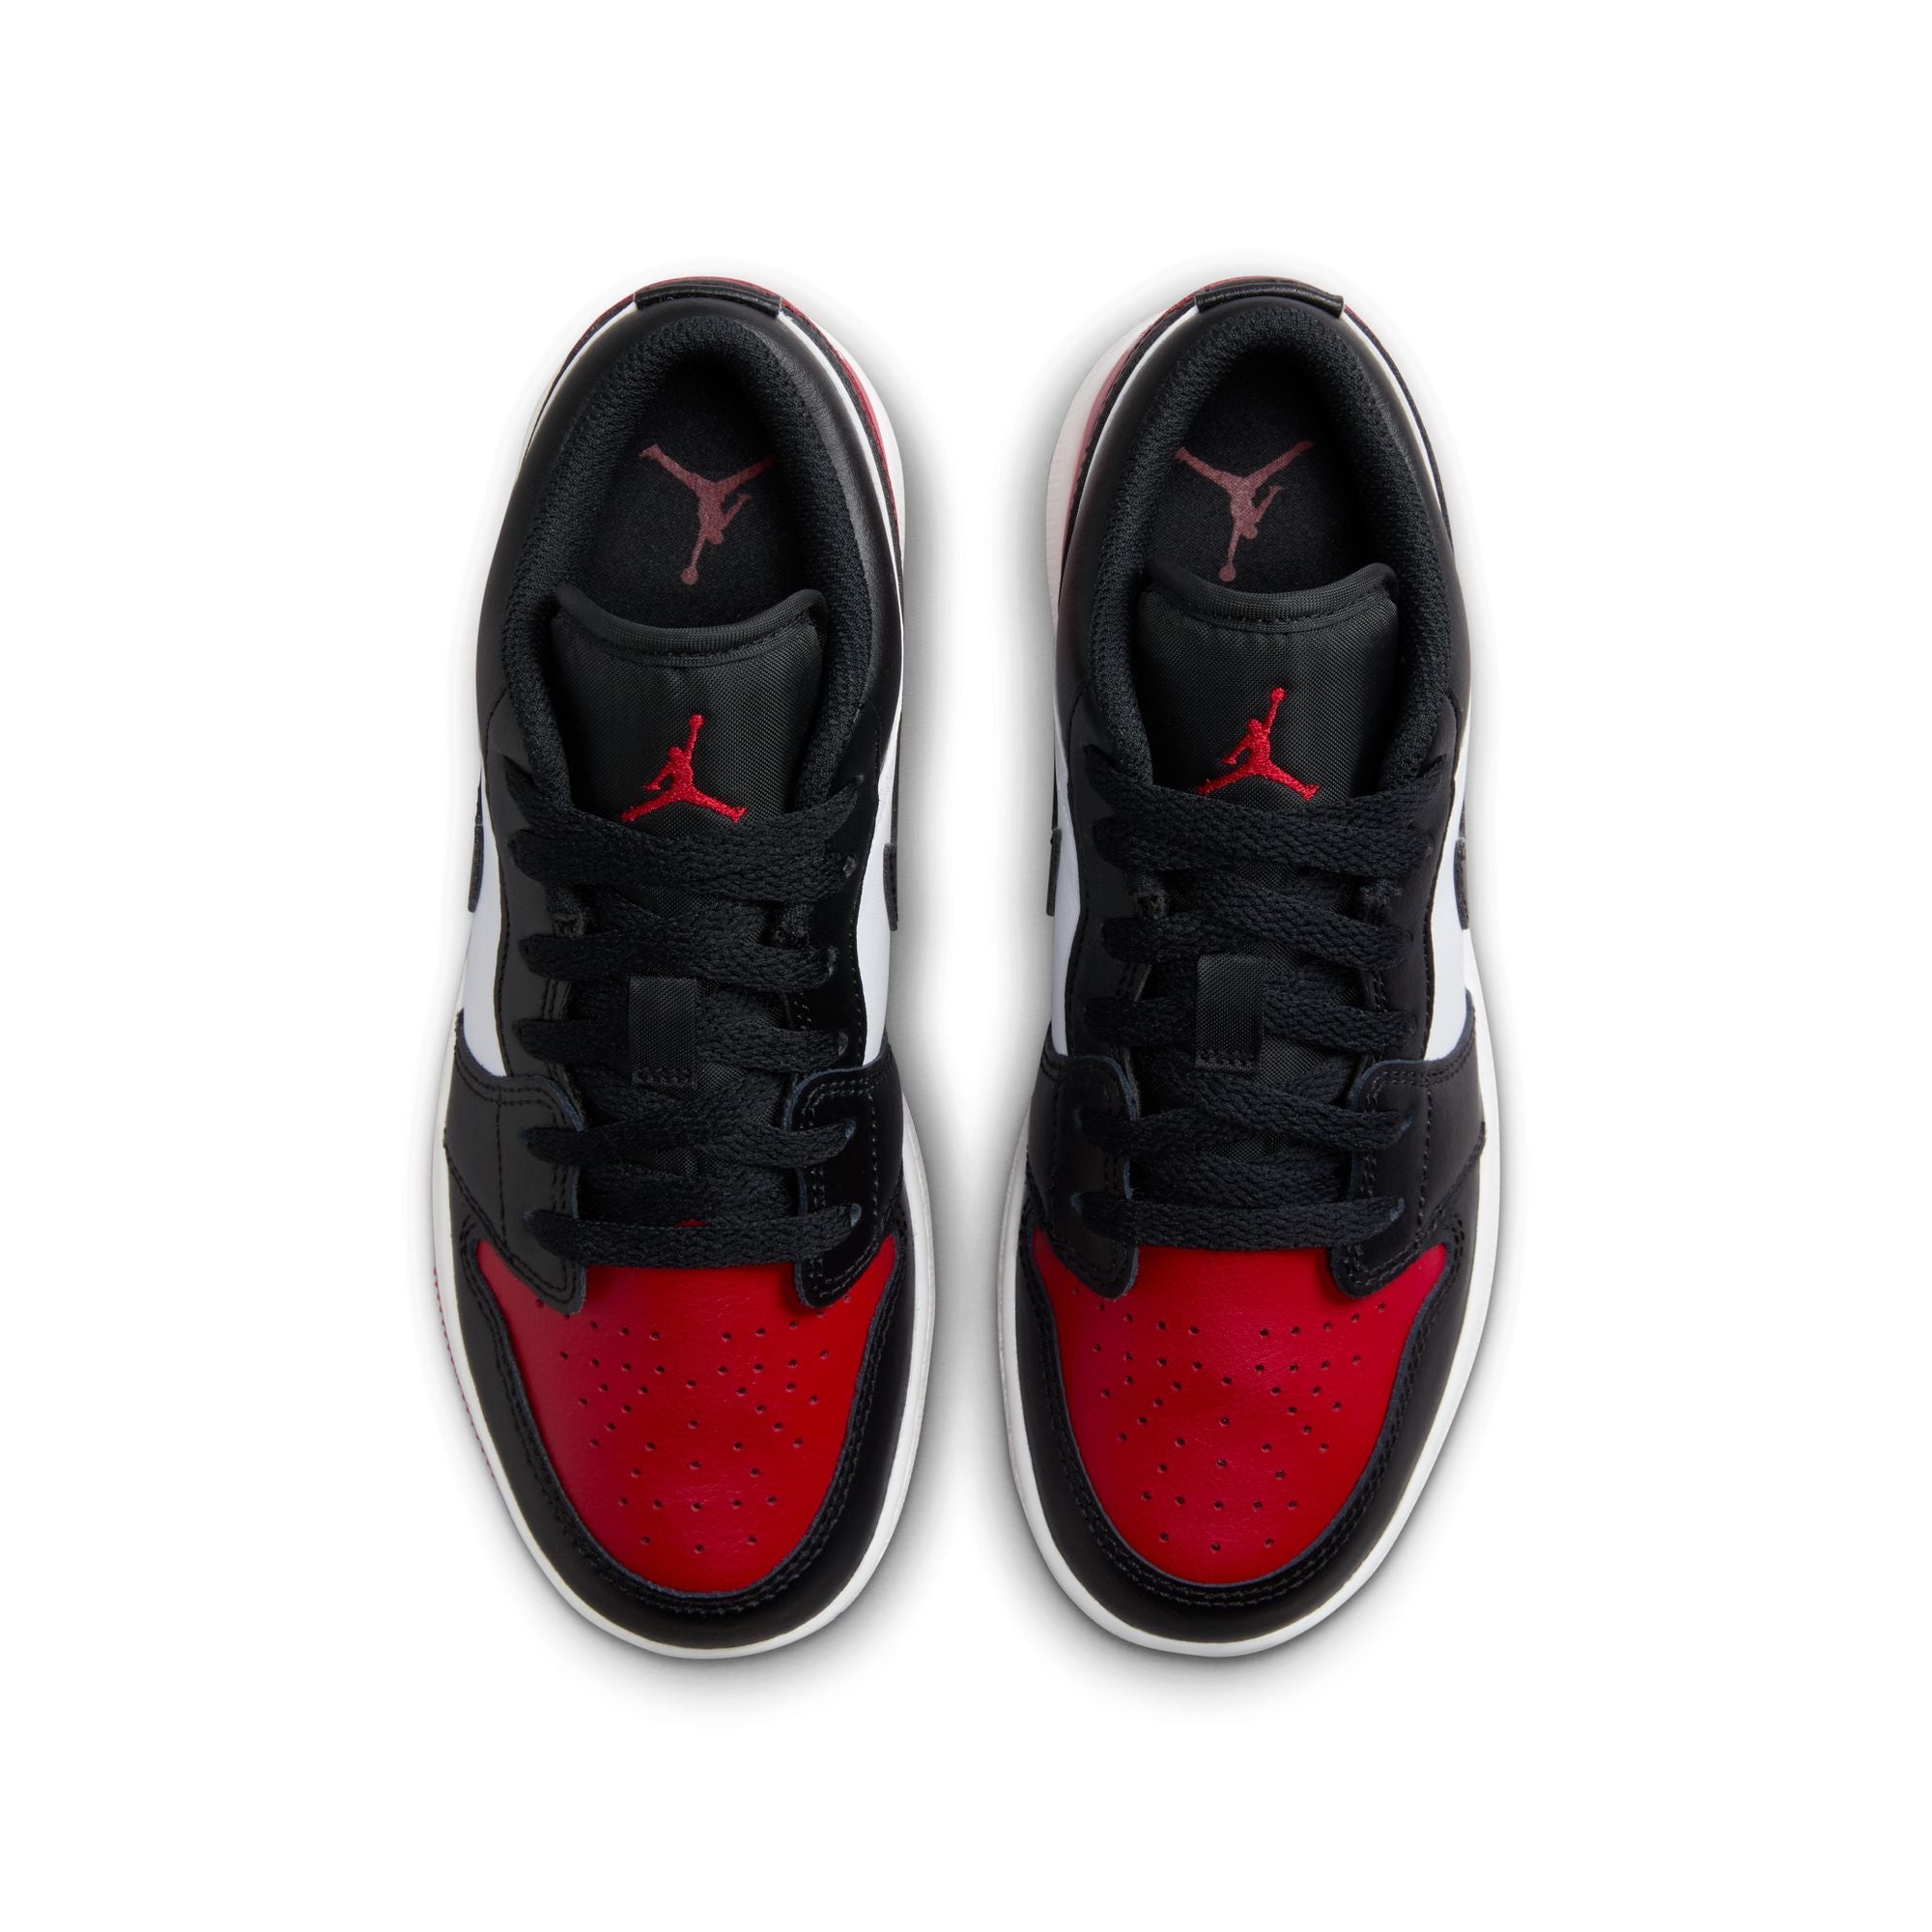 Nike Air Jordan 1 Low (GS)